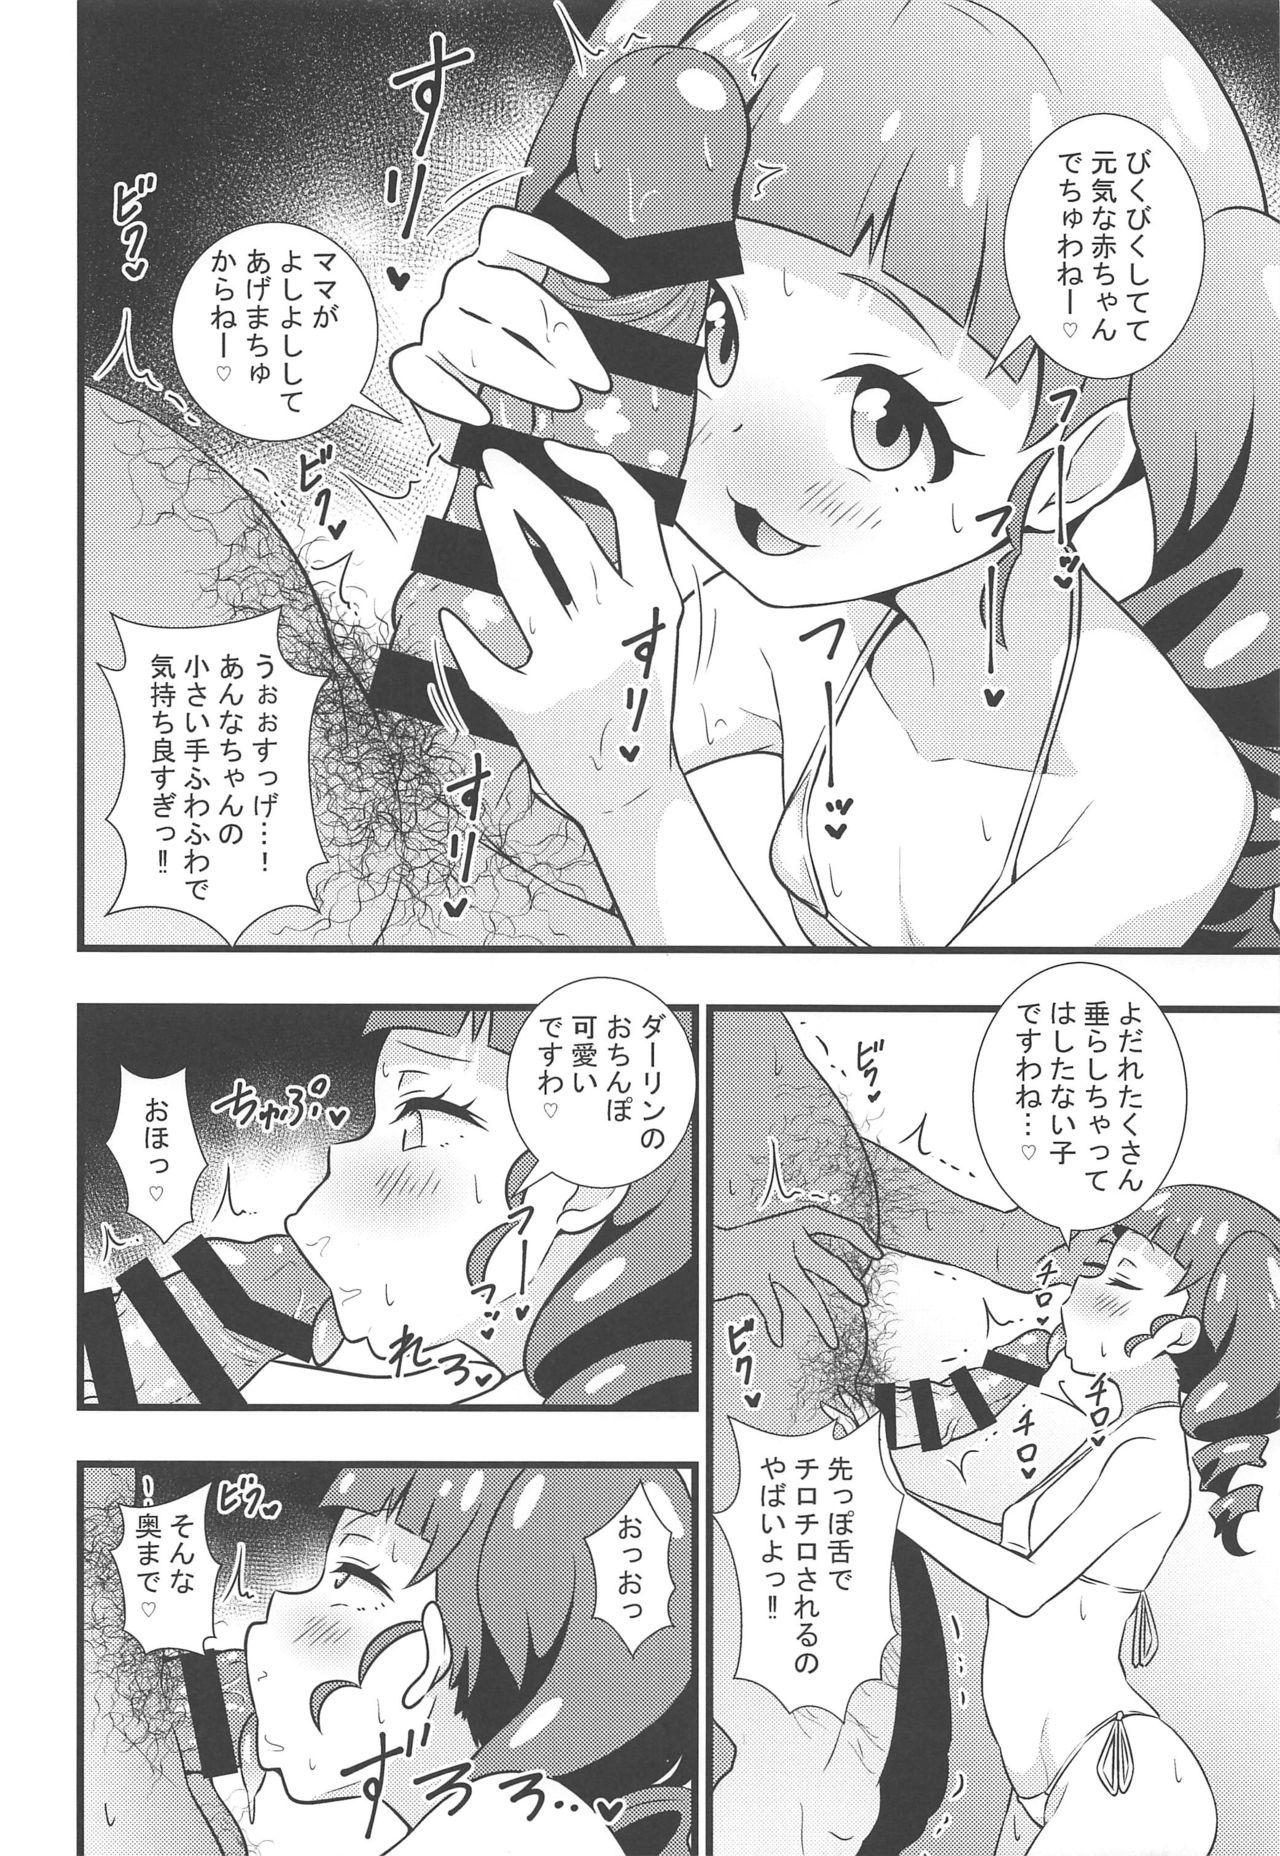 Satin Anna-chan no Hanayome Shugyou - Kiratto pri chan Caught - Page 5